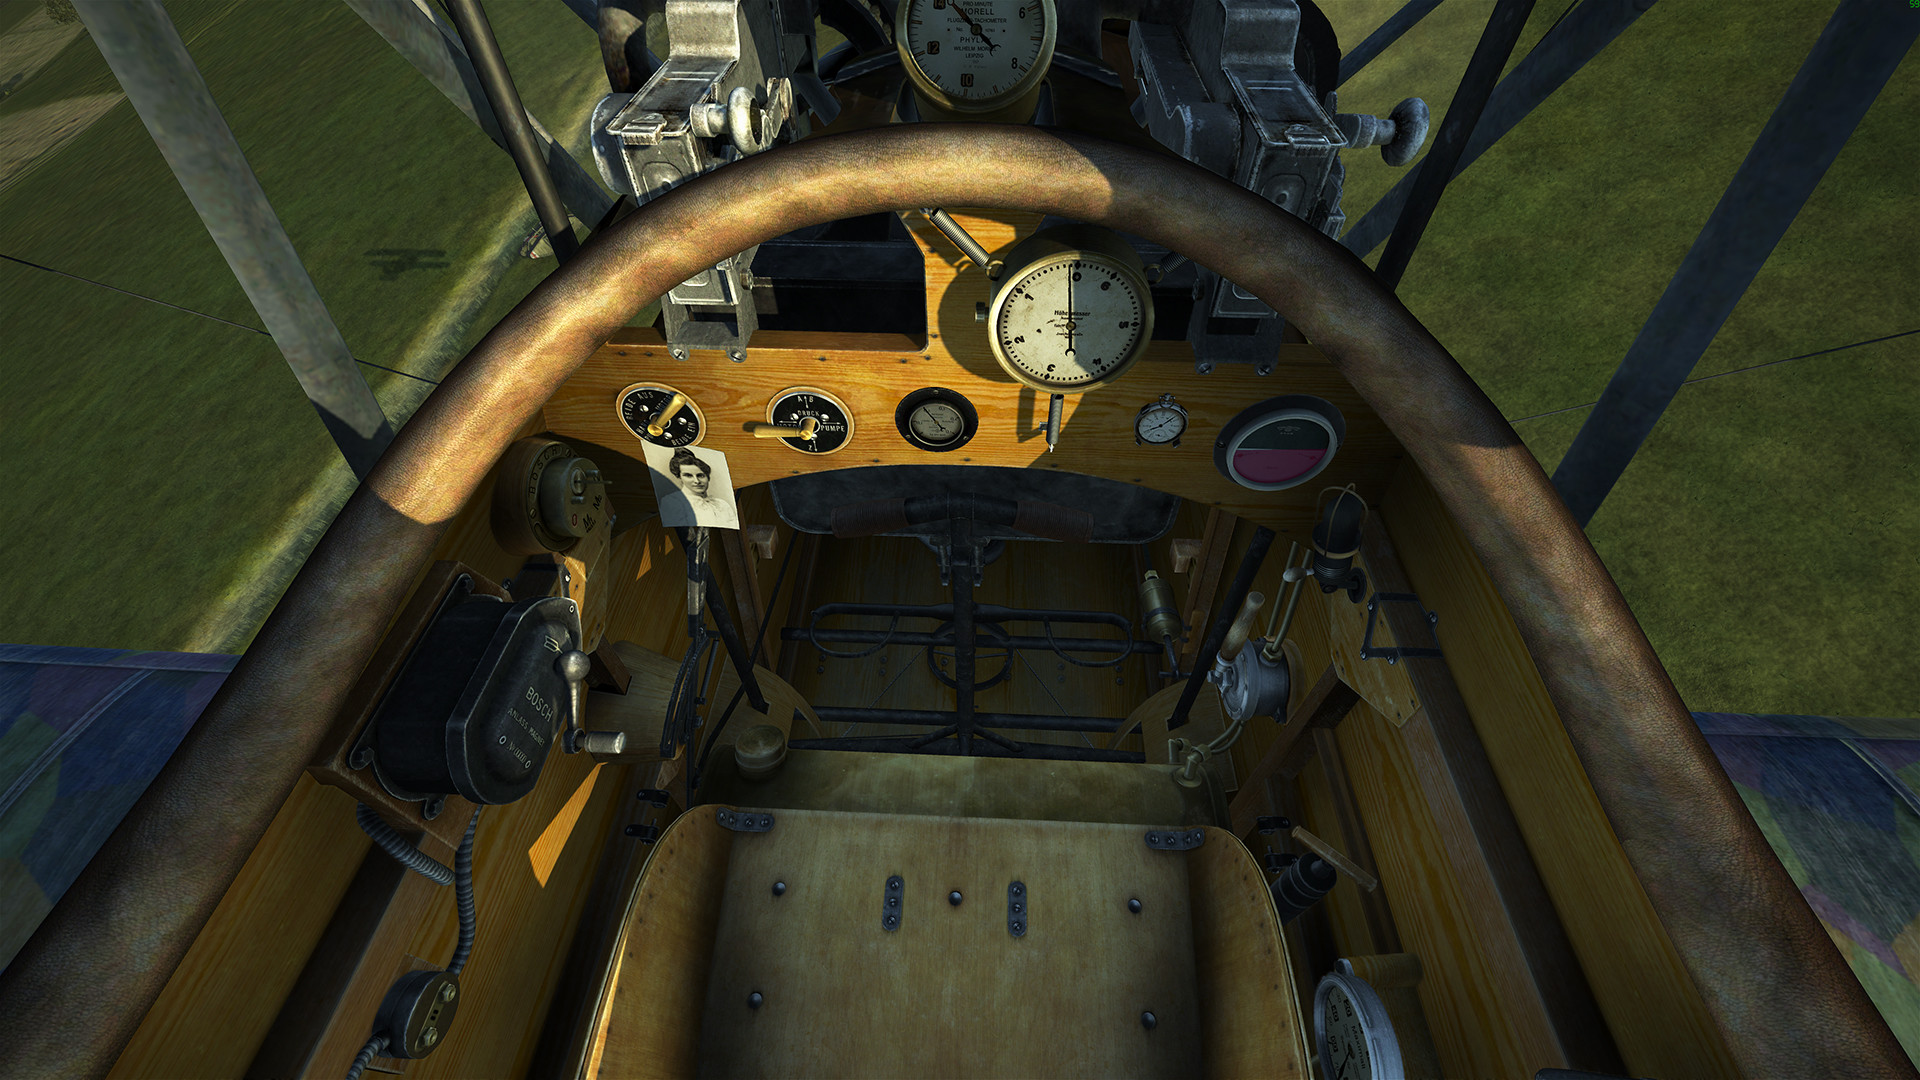 IL-2 Sturmovik: Flying Circus - Volume I DLC